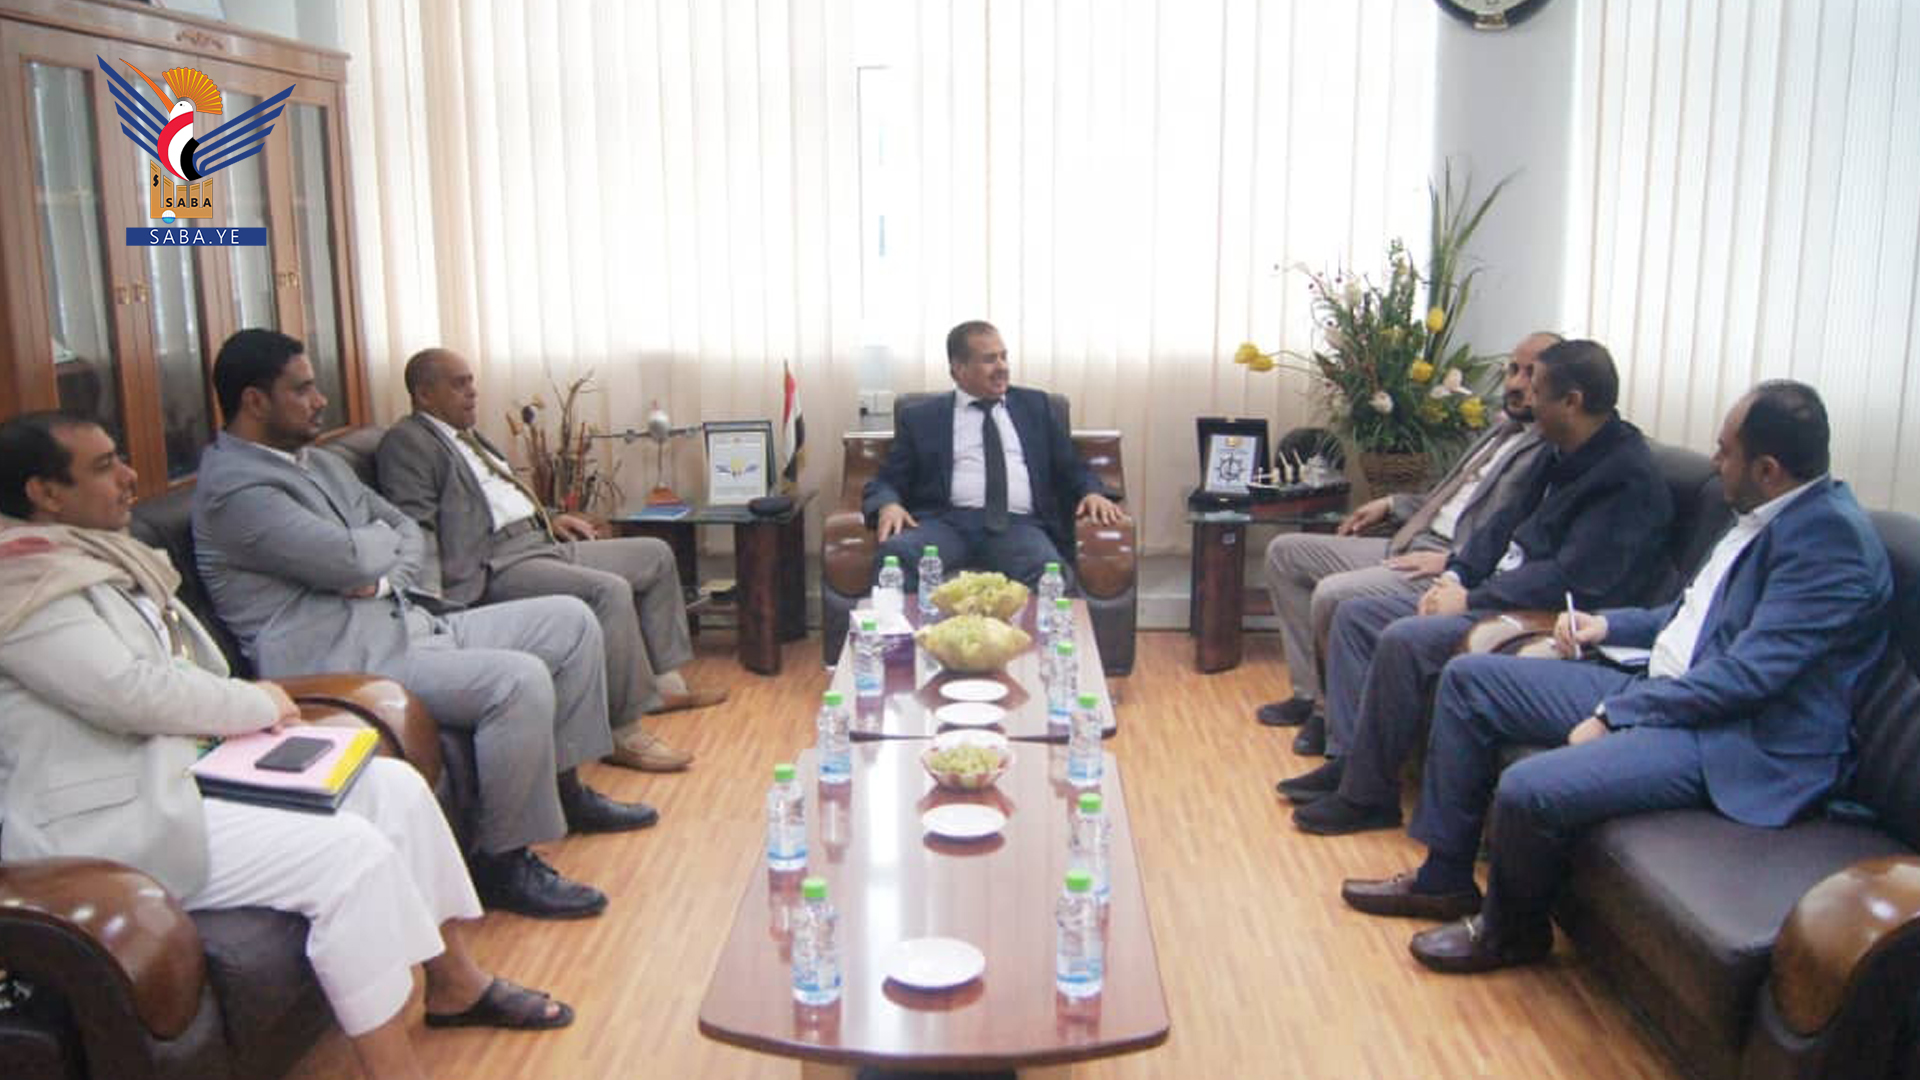   Le ministre des Transports confirme l'importance d'ouvrir de nouvelles destinations pour les vols d'avion via l'aéroport de Sanaa